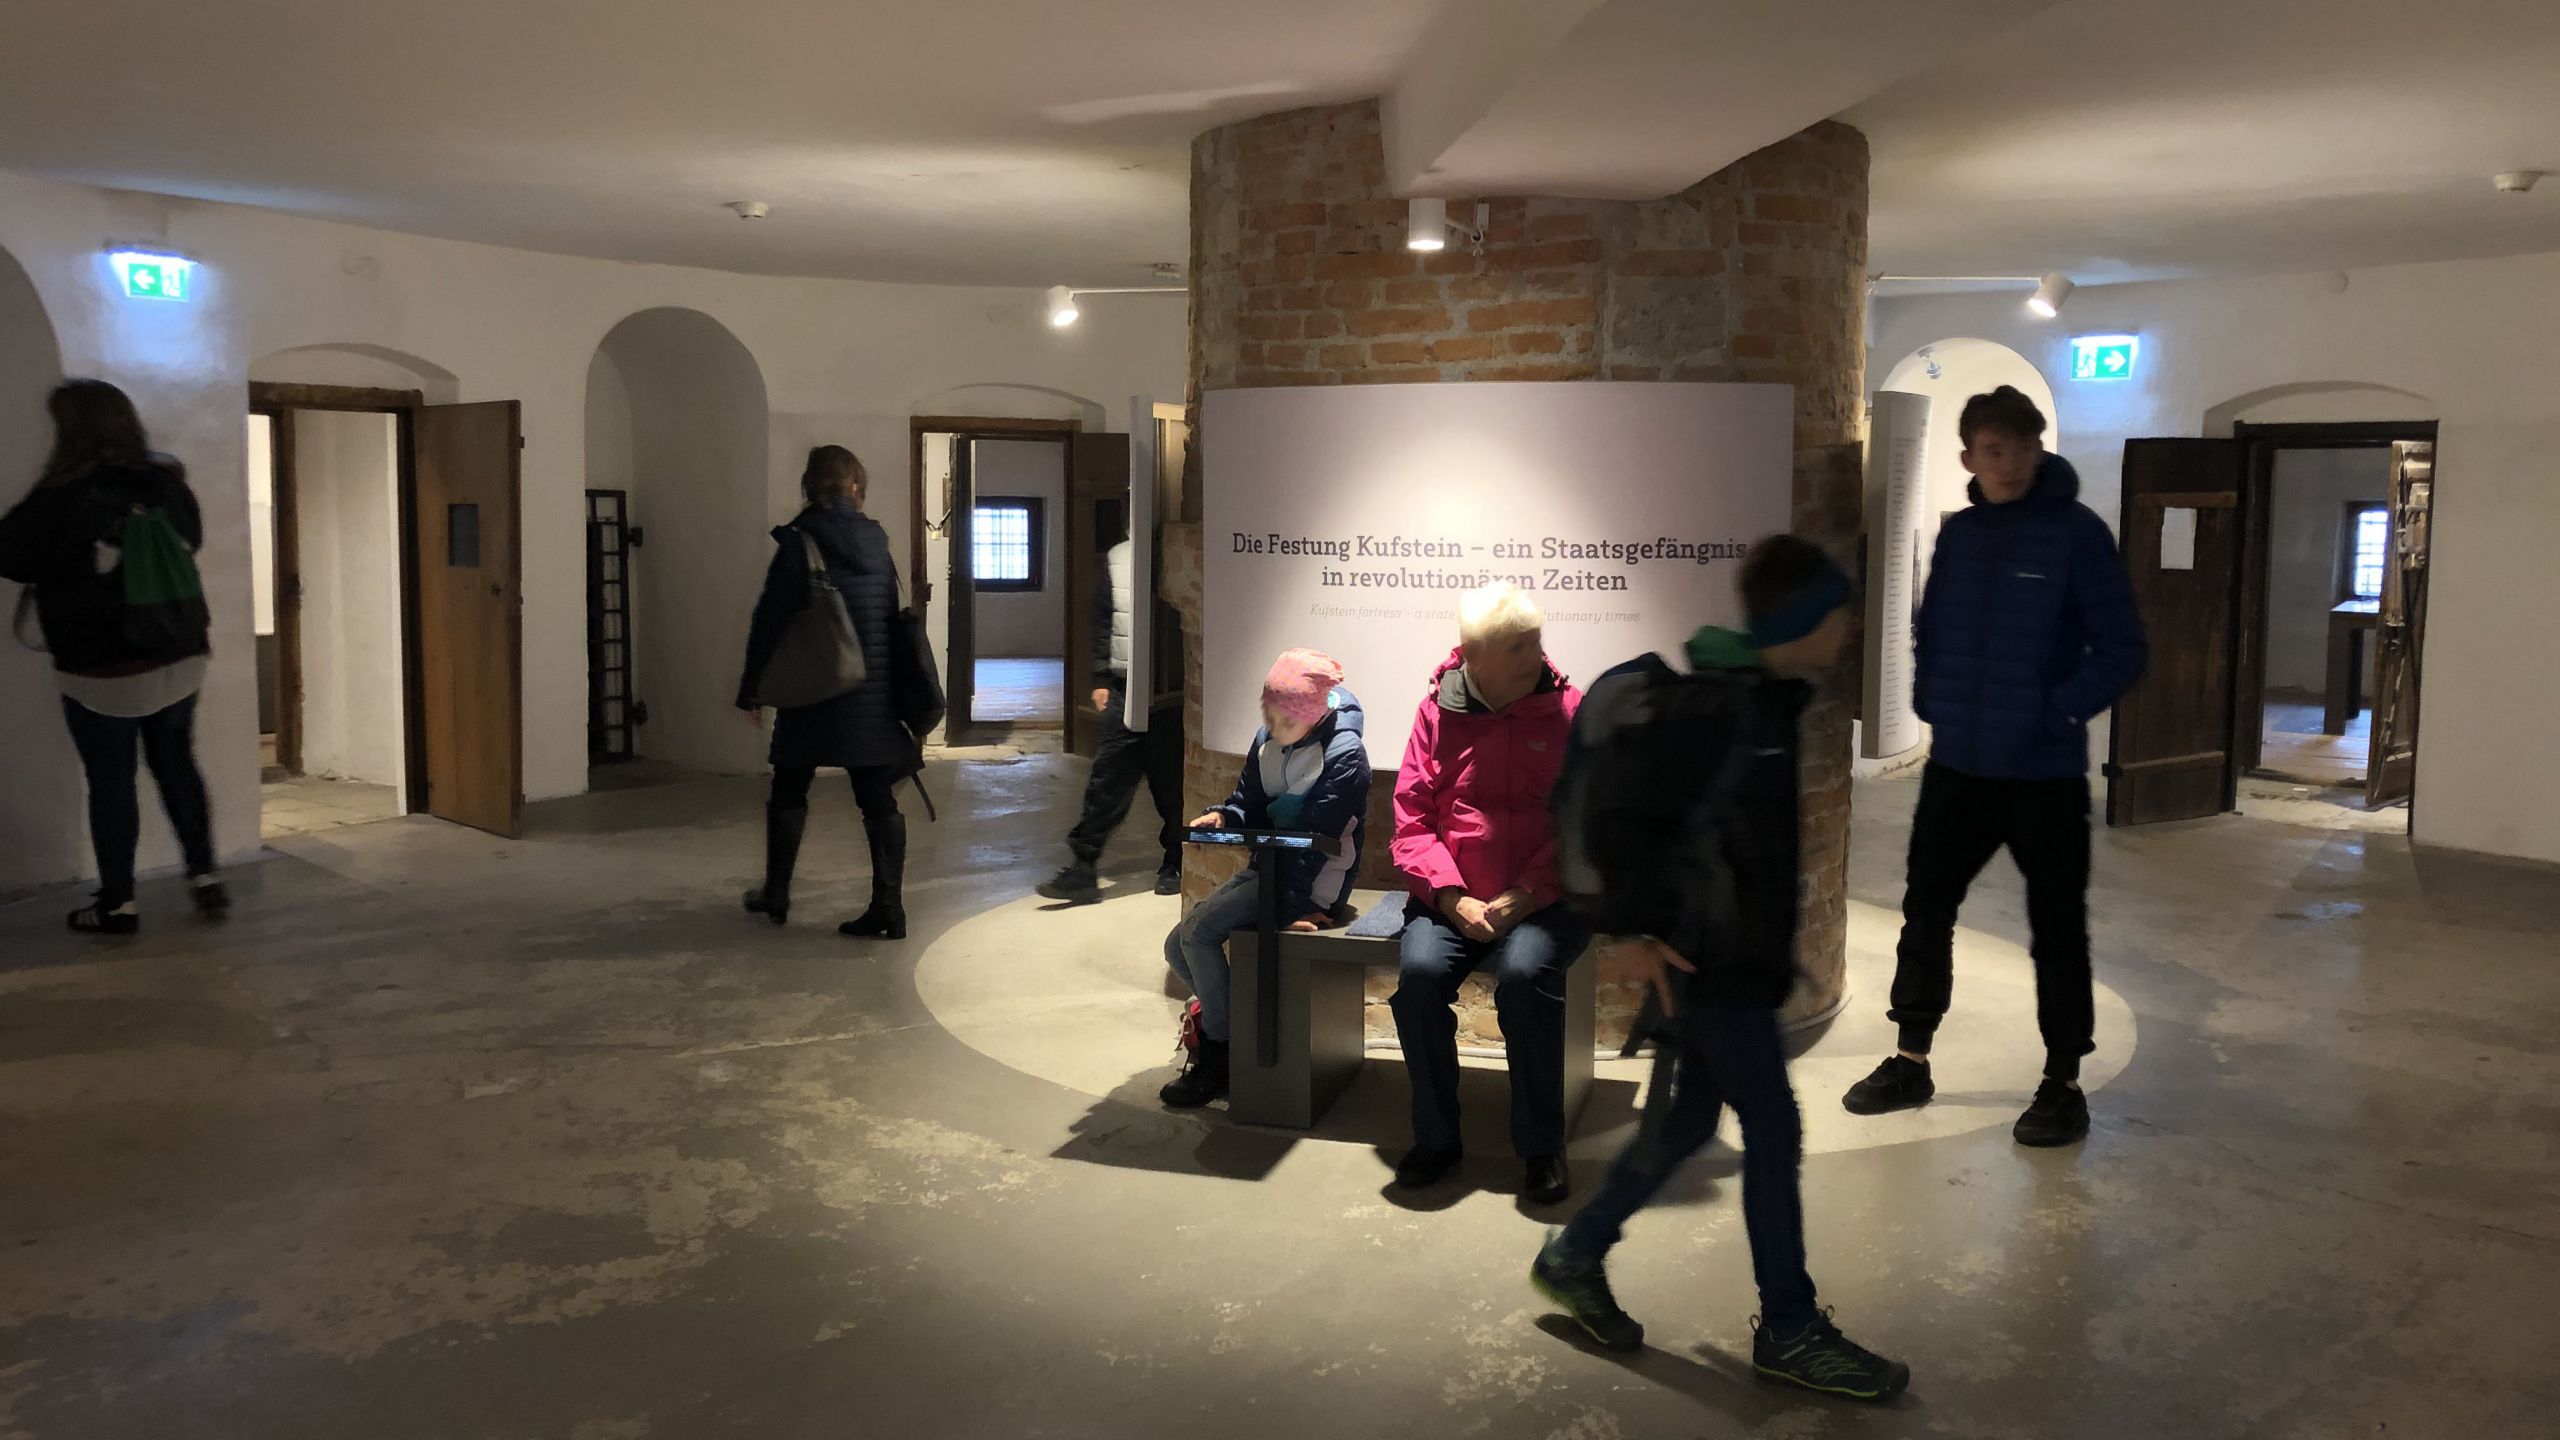 Die Festung Kufstein – ein Staatsgefängnis in revolutionären Zeiten